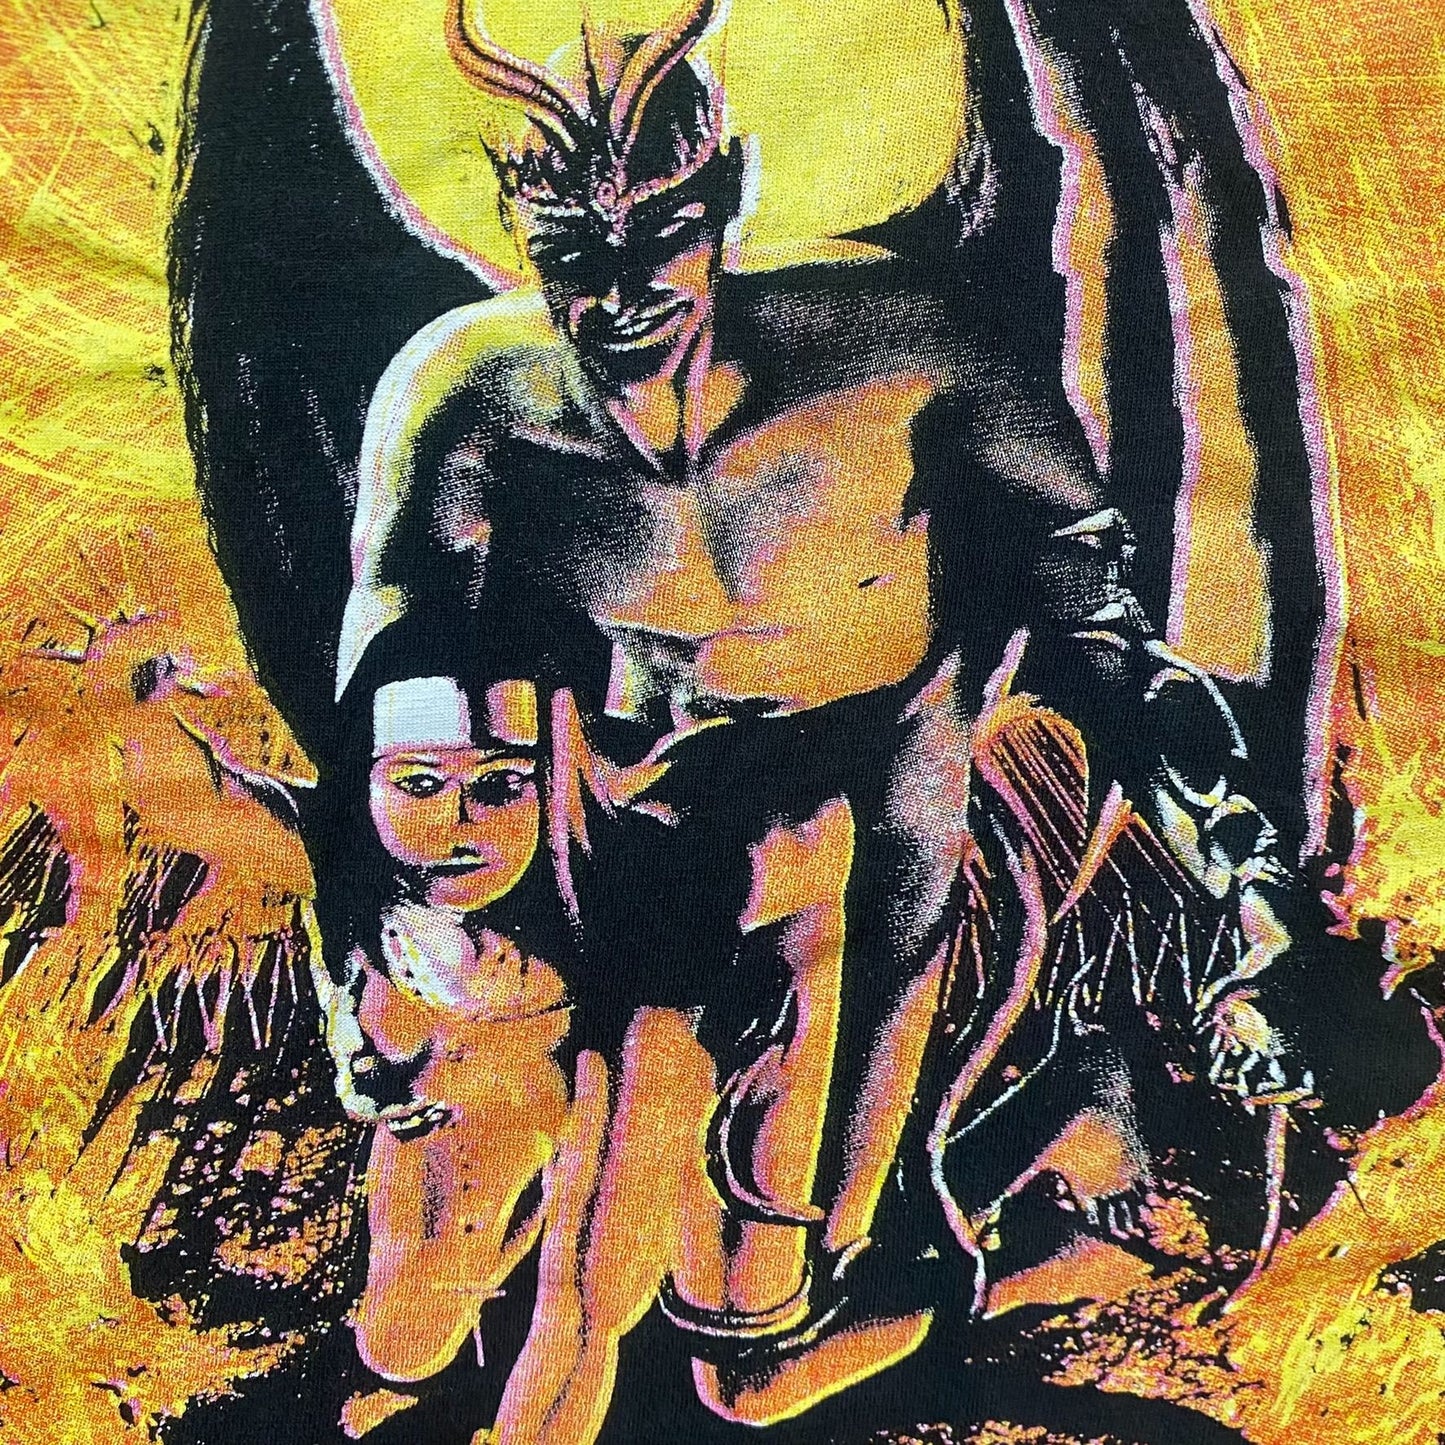 Vintage 90s Cradle of Filth Behind Satan Gothic Metal Band Tee